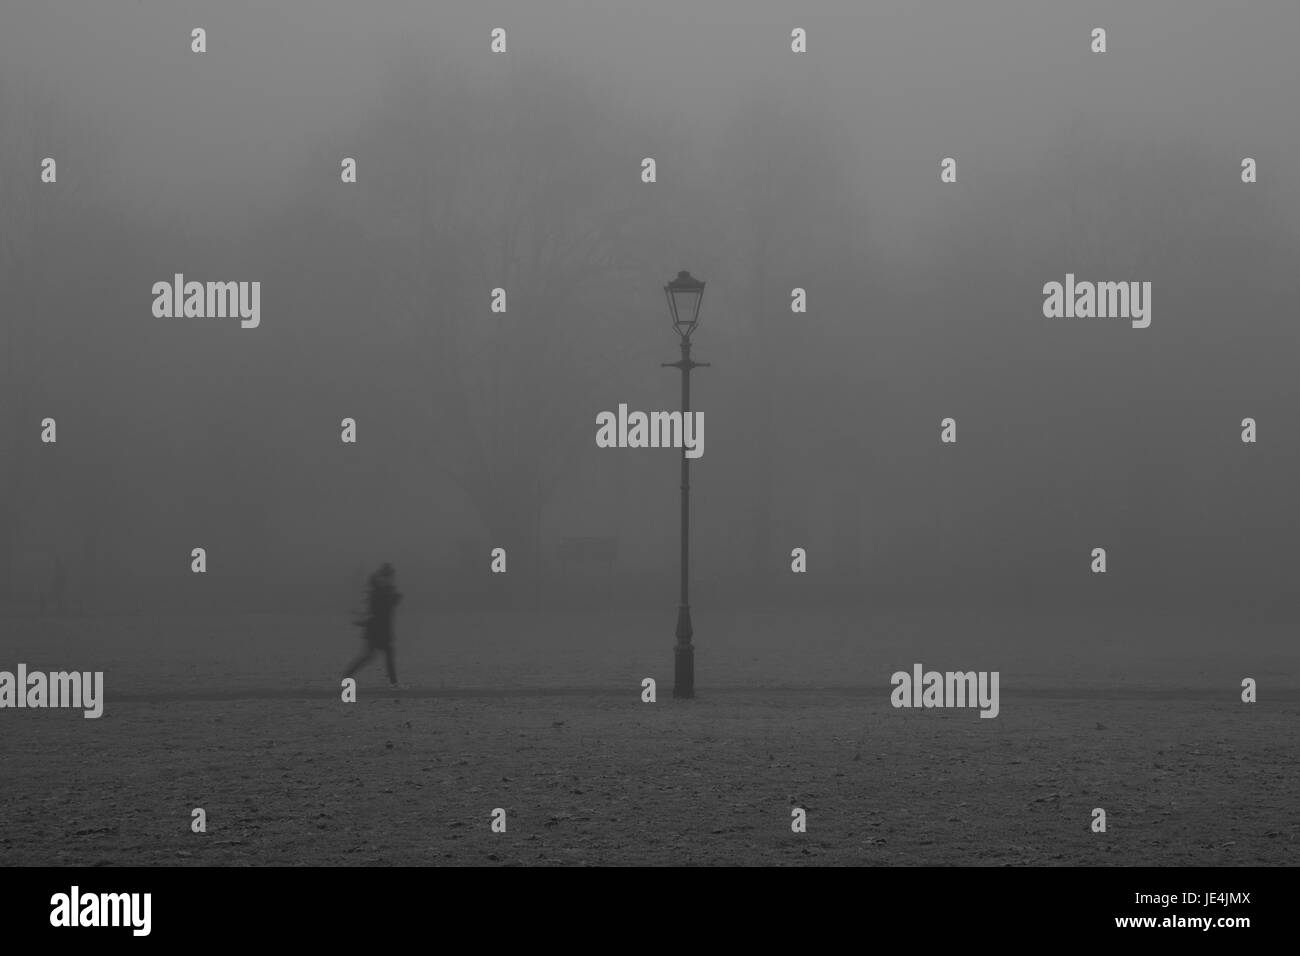 Fog on Clapham Common Northside, Clapham, London, UK Stock Photo